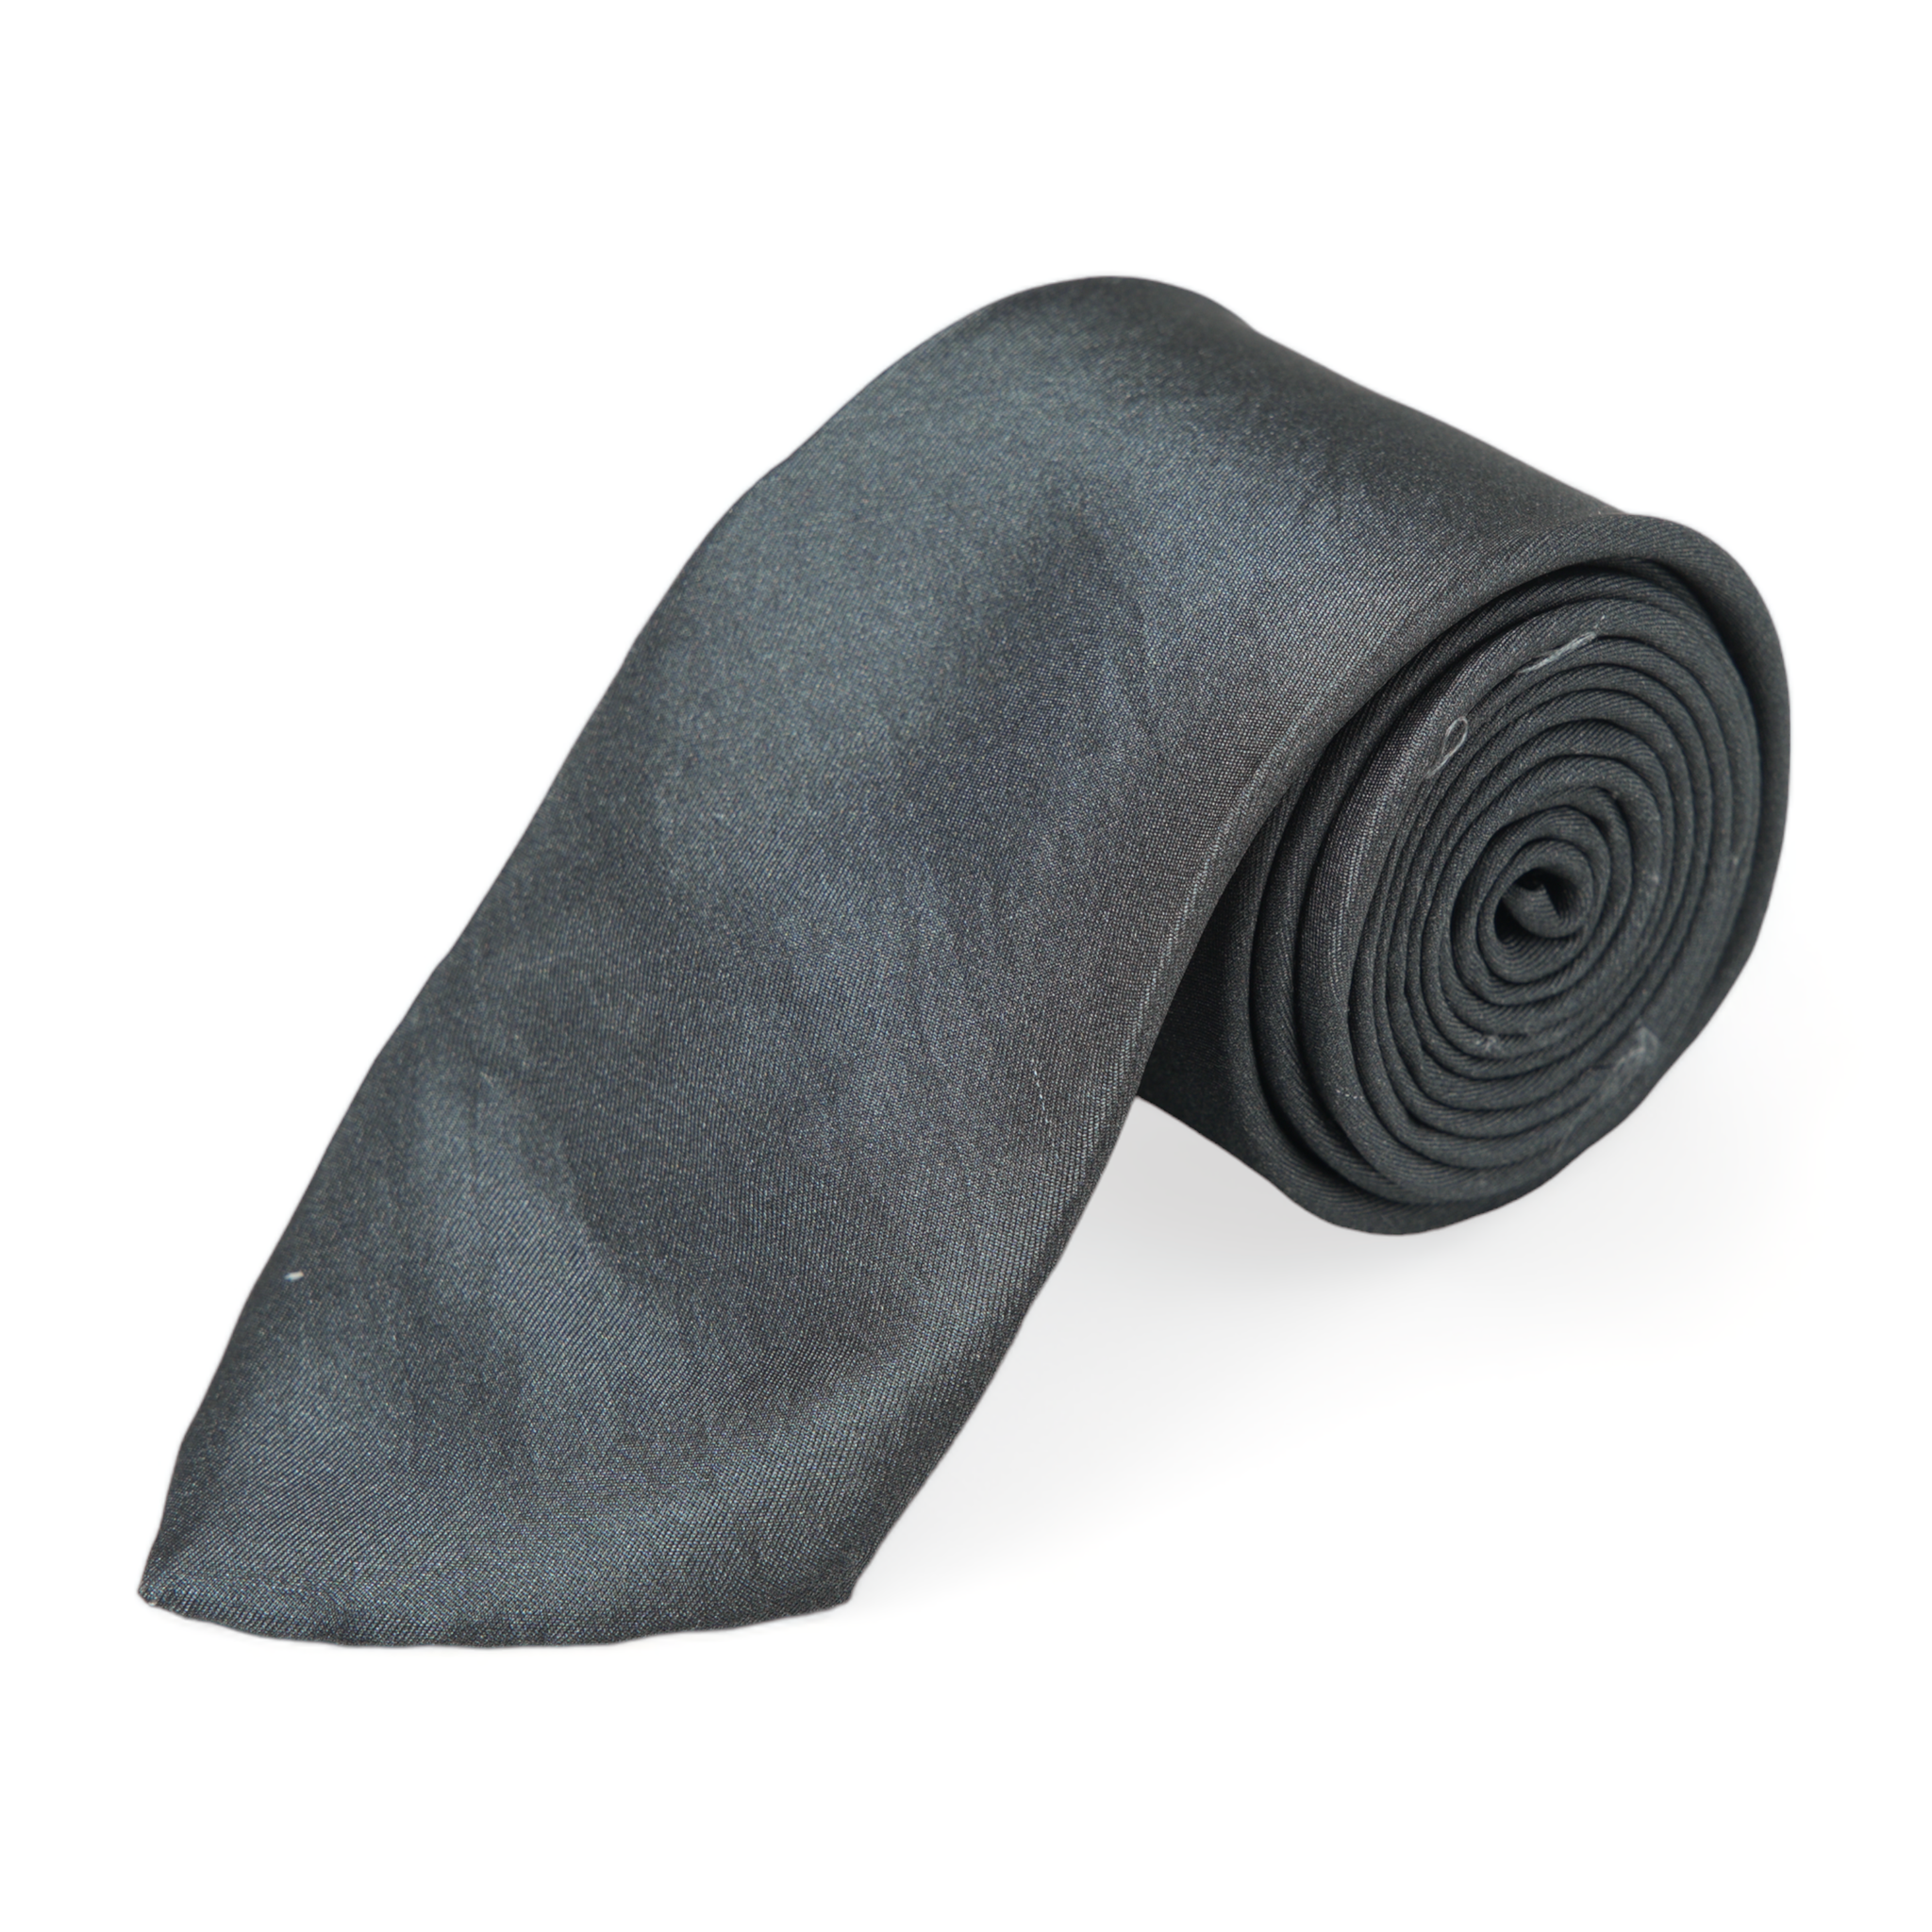 Chokore The Eagle Has Landed - Pocket Square & Dark Grey color silk tie for men